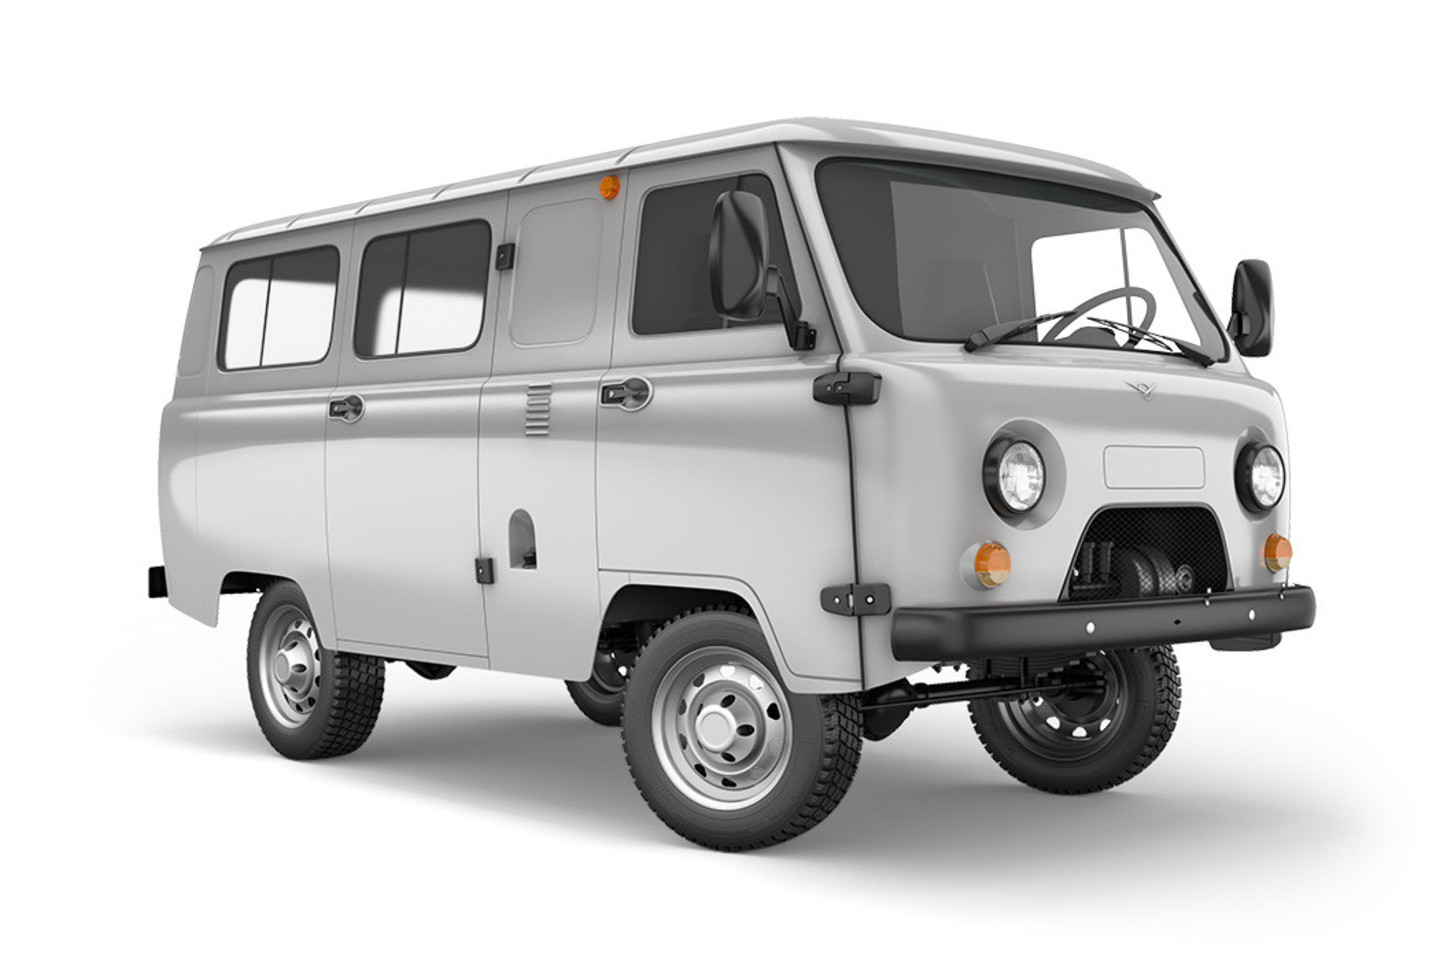 UAZ mikroautobusas su neesminiais konstrukcijos pakeitimais gaminamas nuo 1965 metų.<br>Gamintojo nuotr.